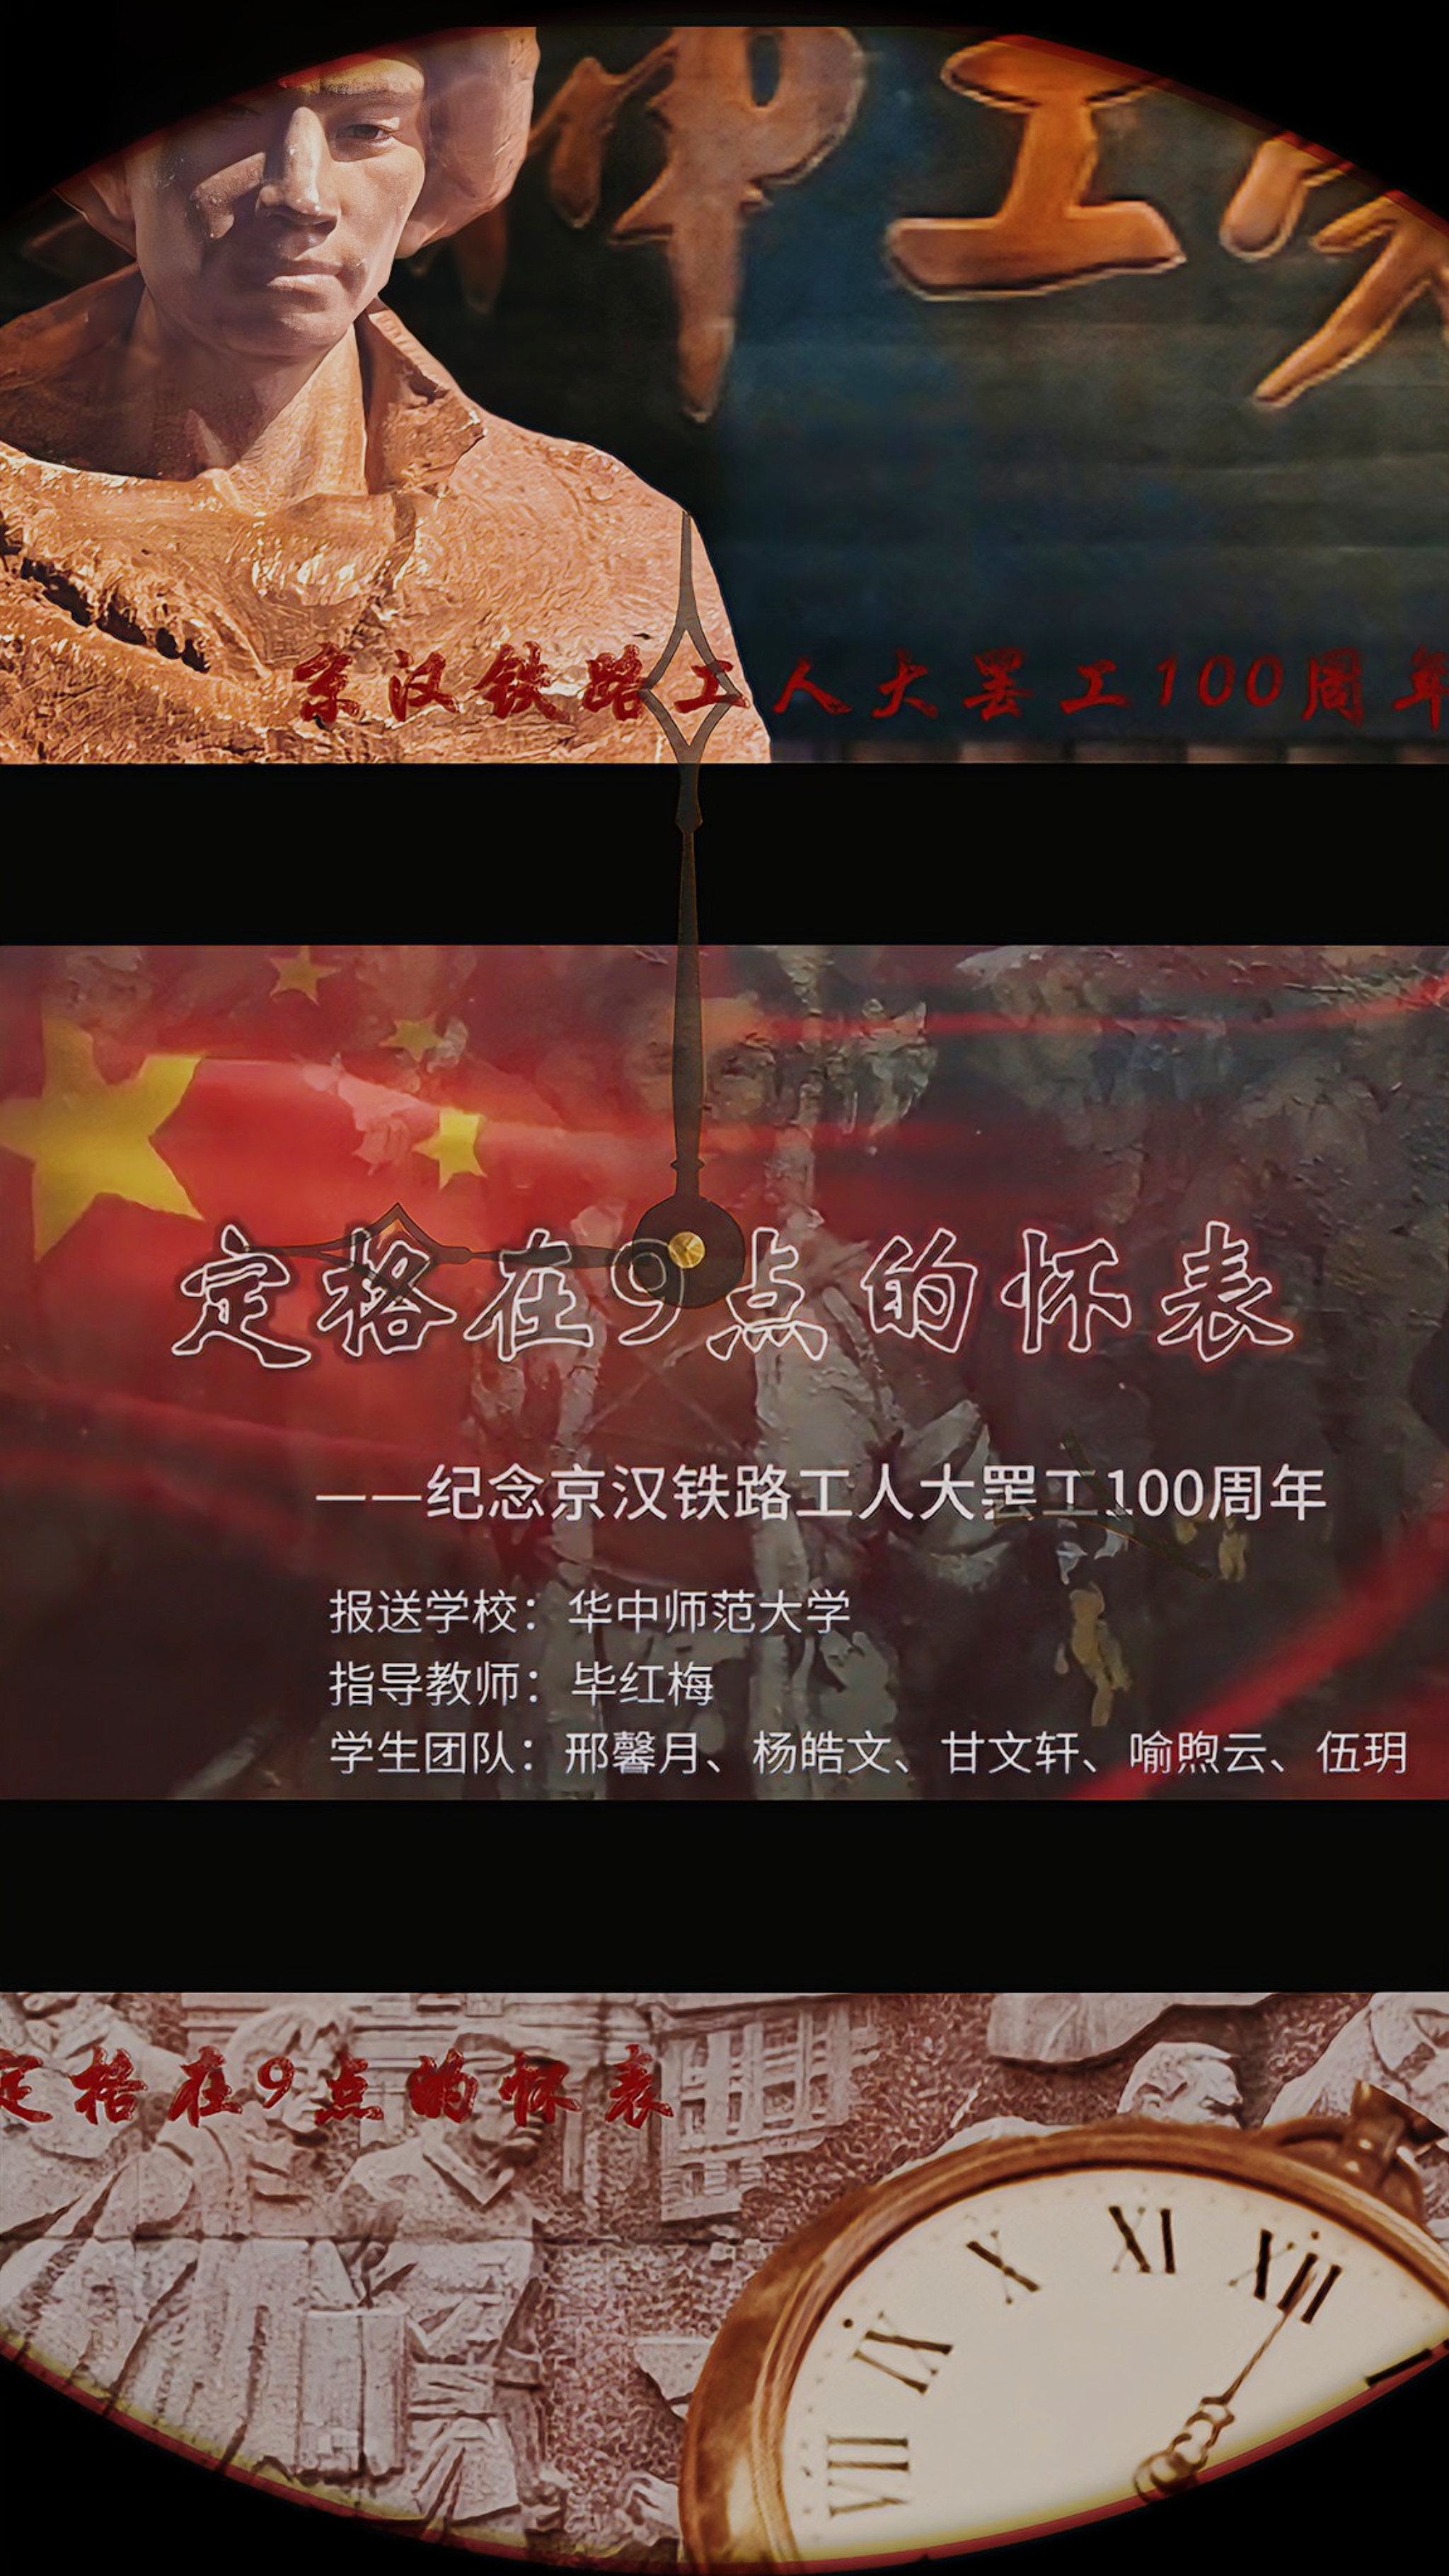 定格在9点的怀表——纪念京汉铁路工人大罢工100周年